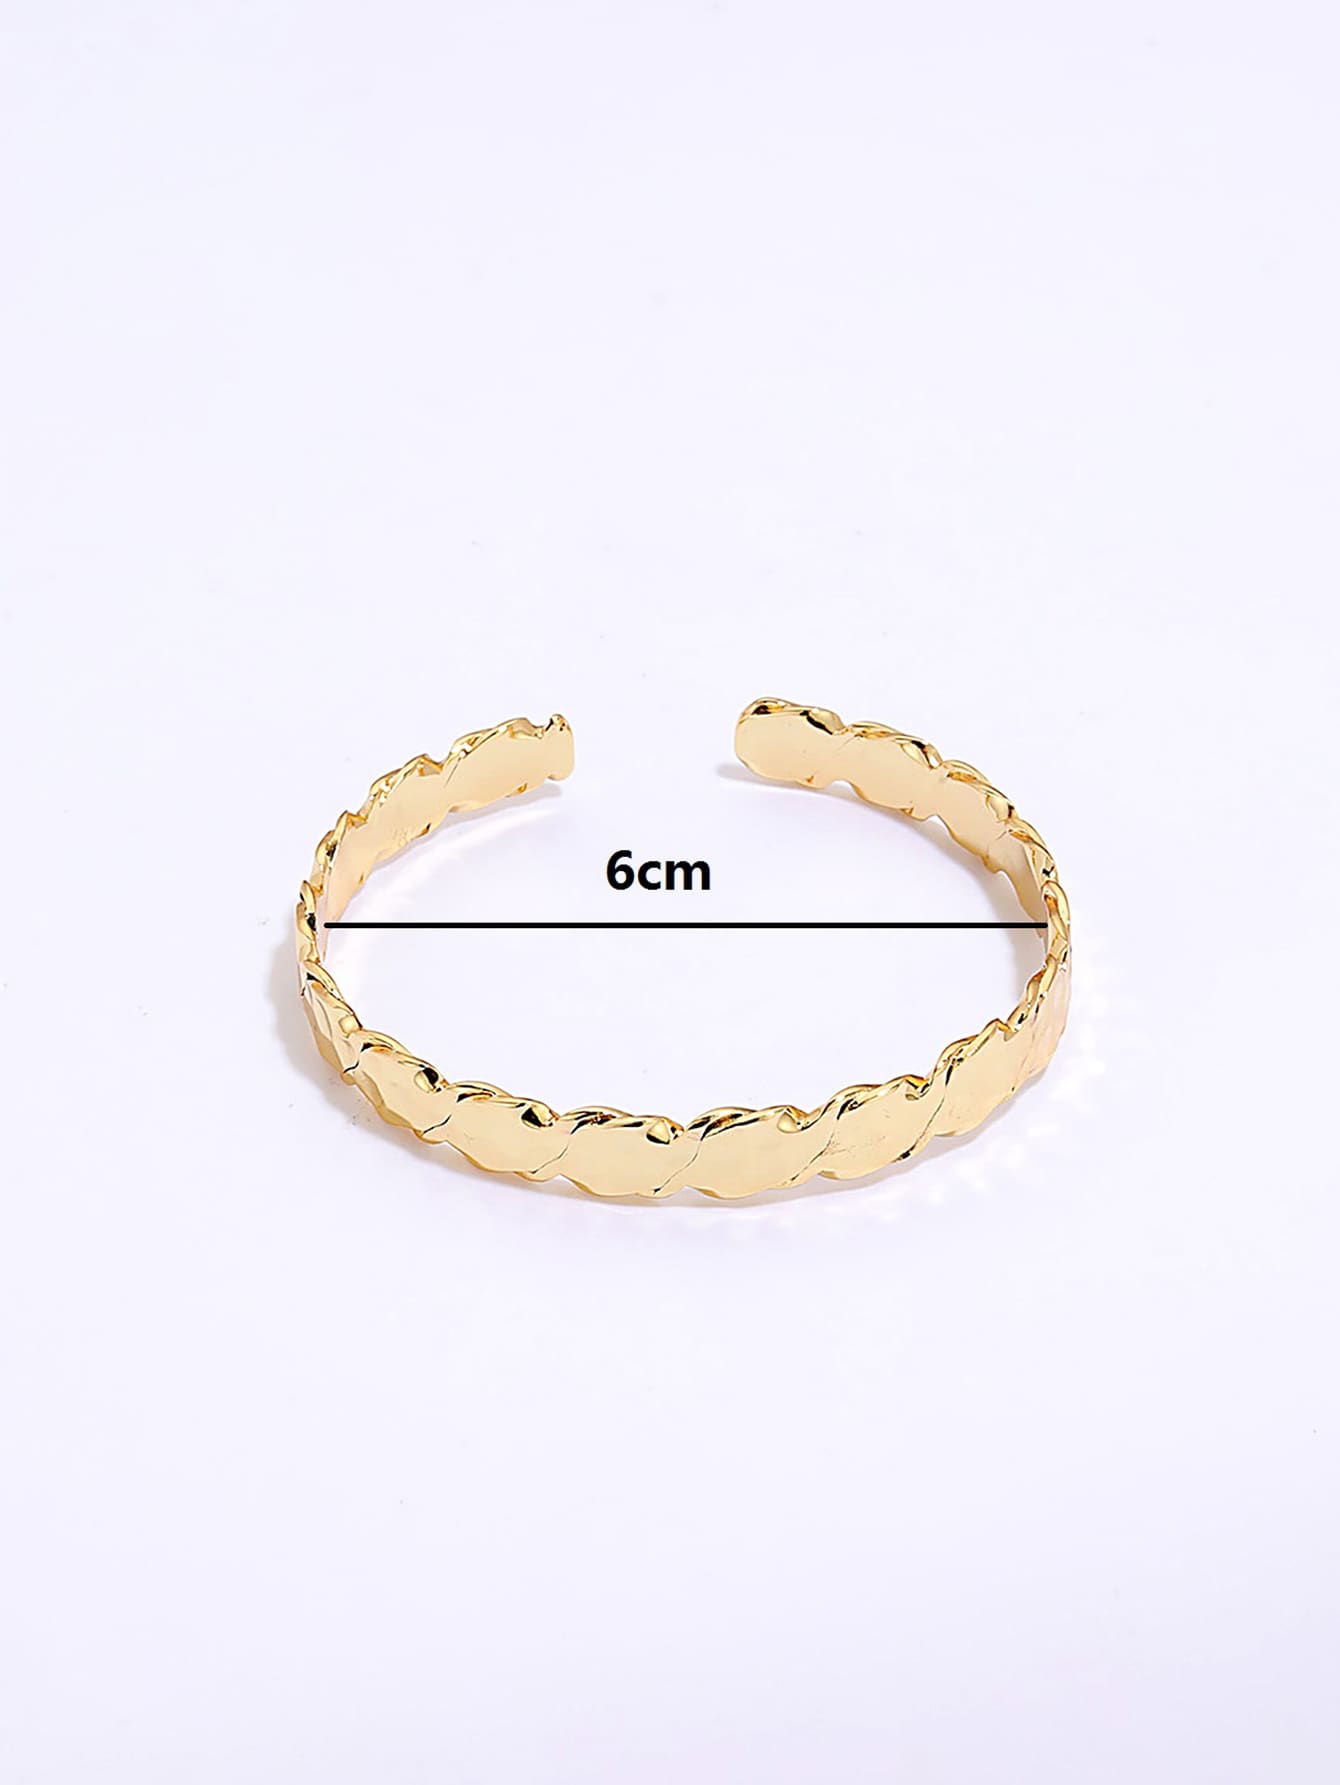 Simple moda cobre electrochapado 18K oro abierto pulserapicture4